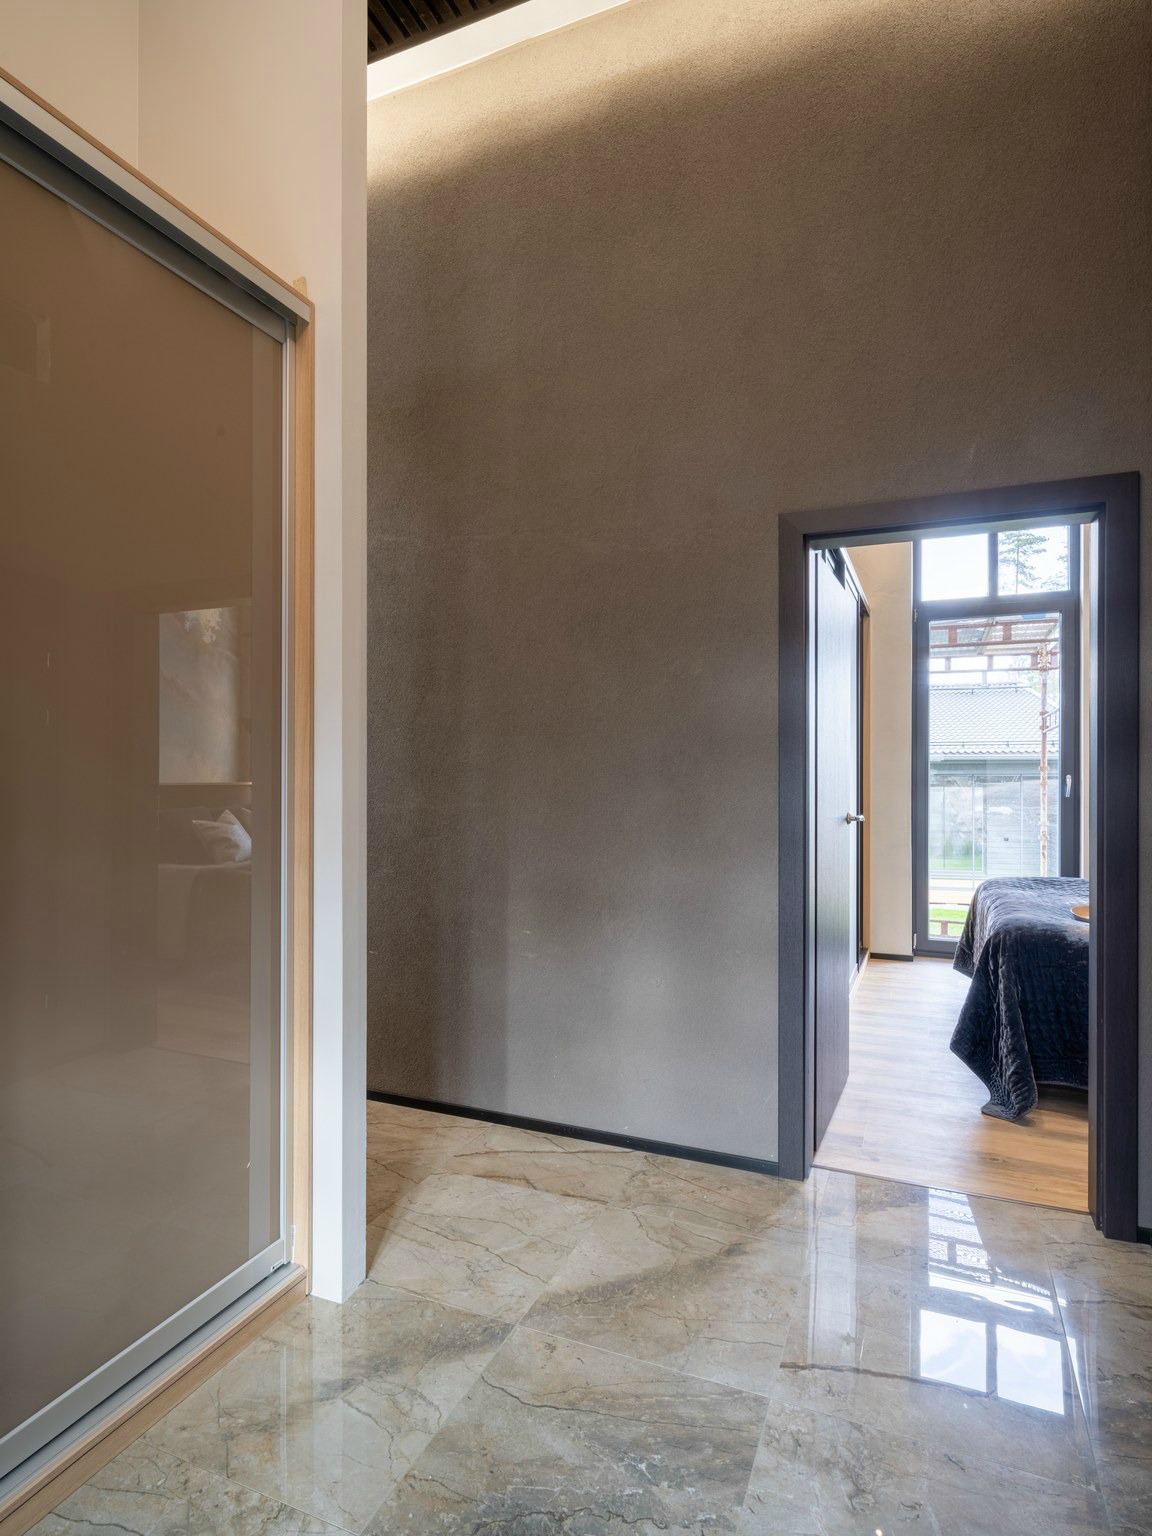 Asuntomessut 2020 kohde 20 Villa Lakka eteisen sisustus Mirror Line liukuovikaapisto. Kuva Ilkka Vuorinen, suunnittelu Iisa Laatio